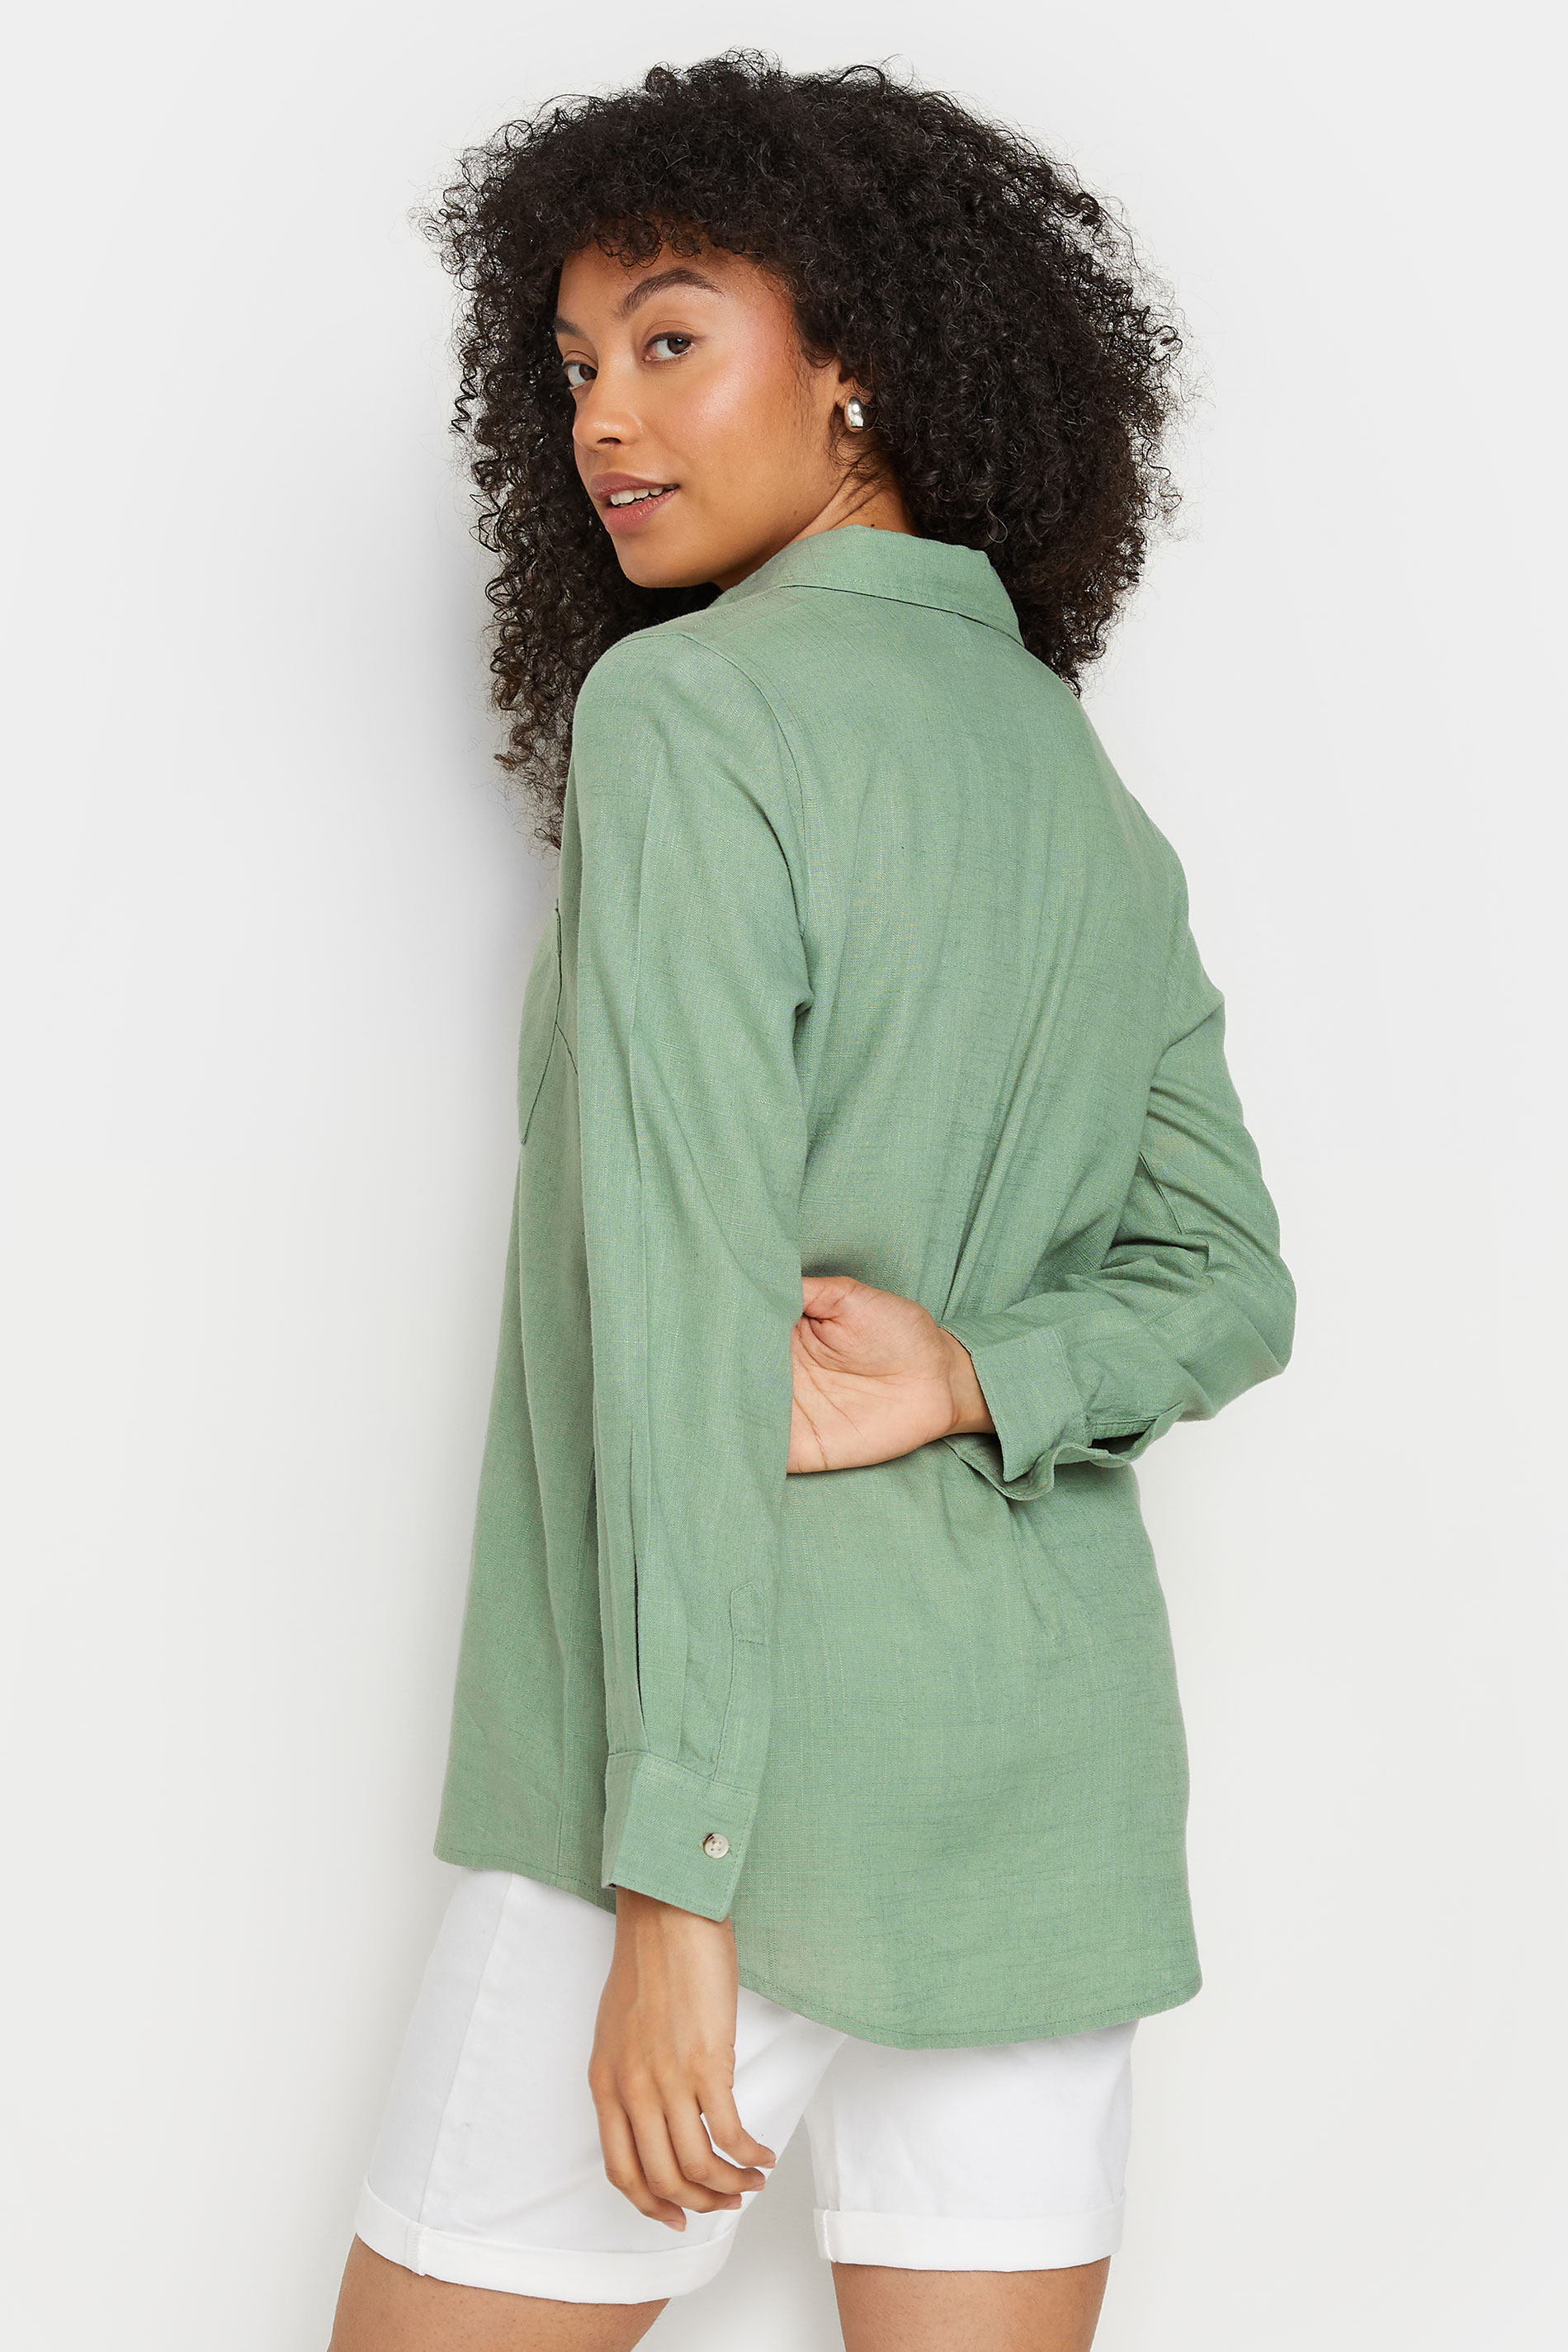 M&Co Sage Green Long Sleeve Linen Shirt | M&Co 3